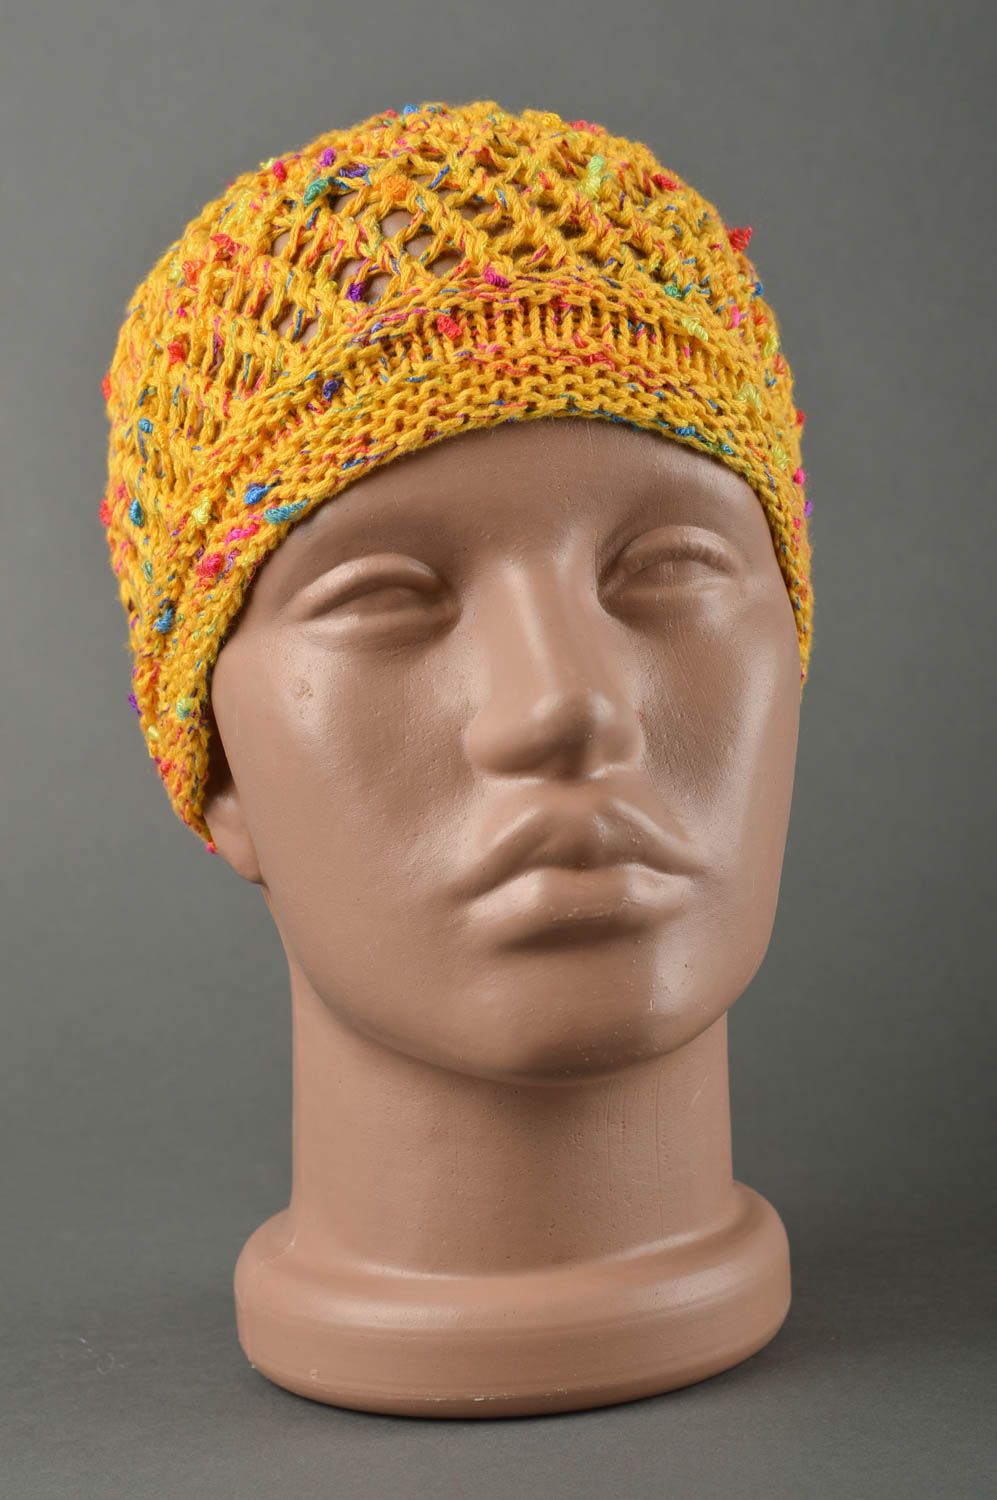 Вязаная шапка для детей хэндмэйд шапочка на девочку весенняя шапка Мозаика фото 1